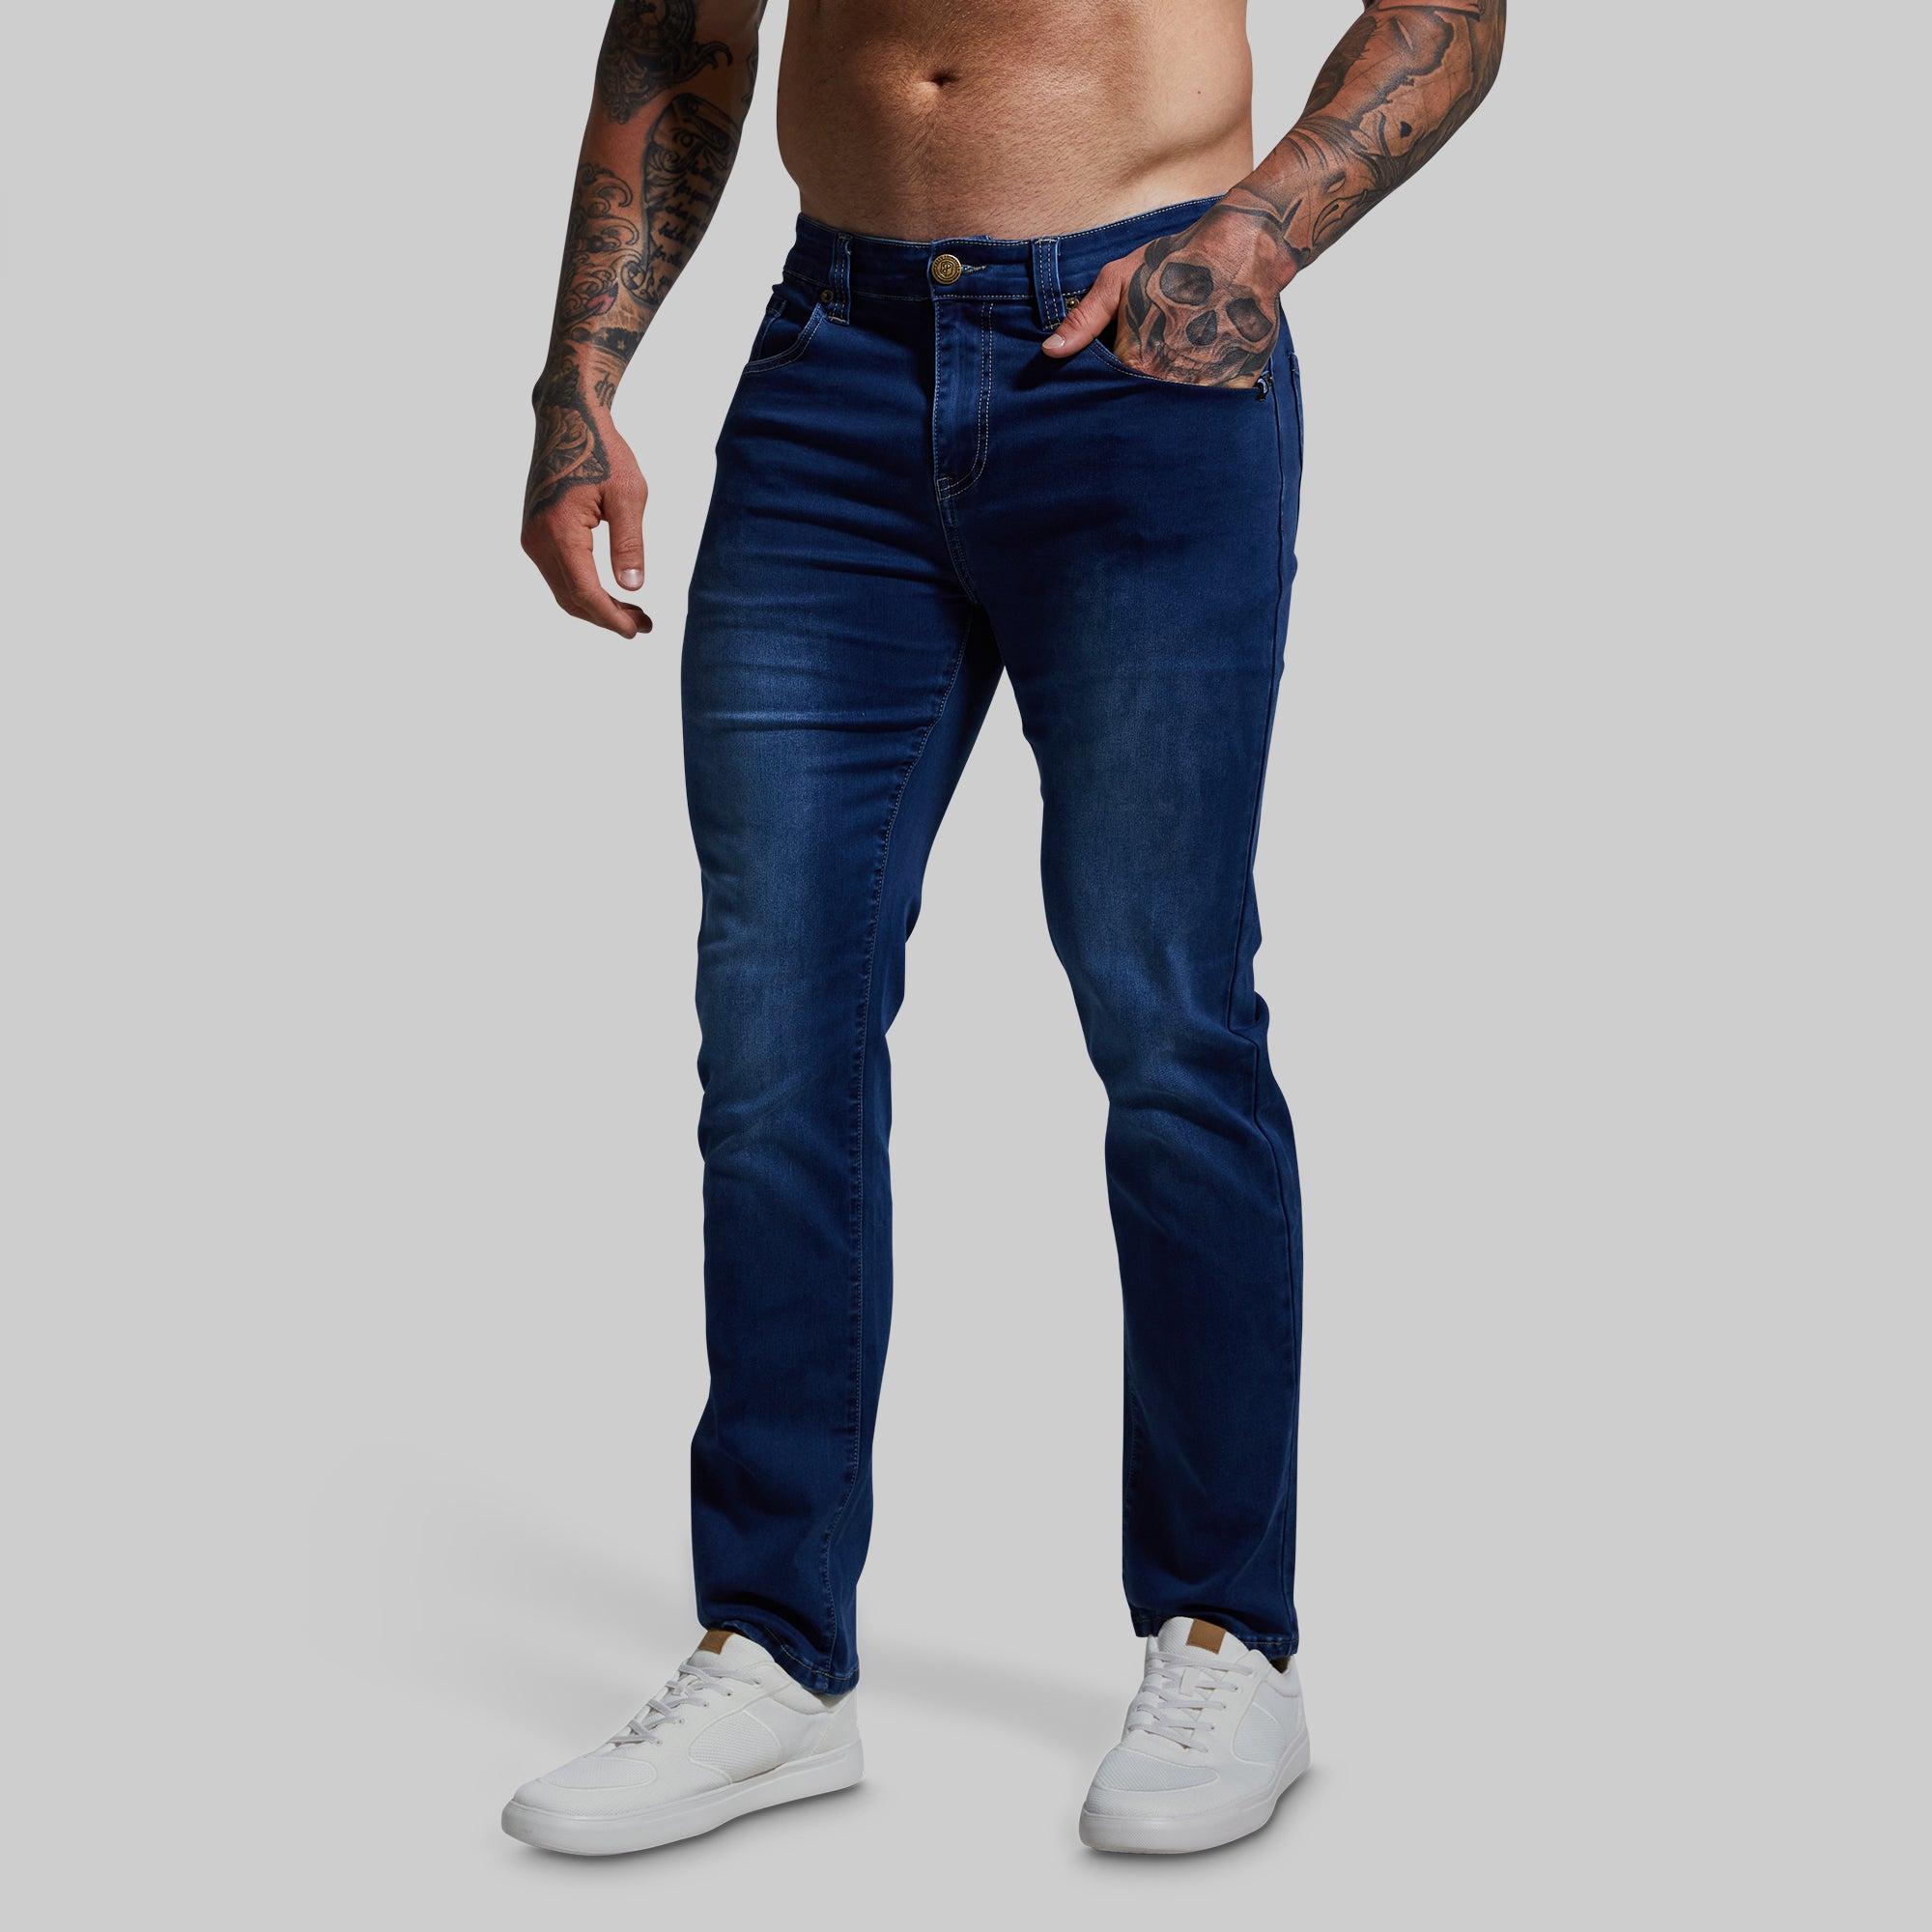 Jeans & Pants, Walker Lycra Jeans